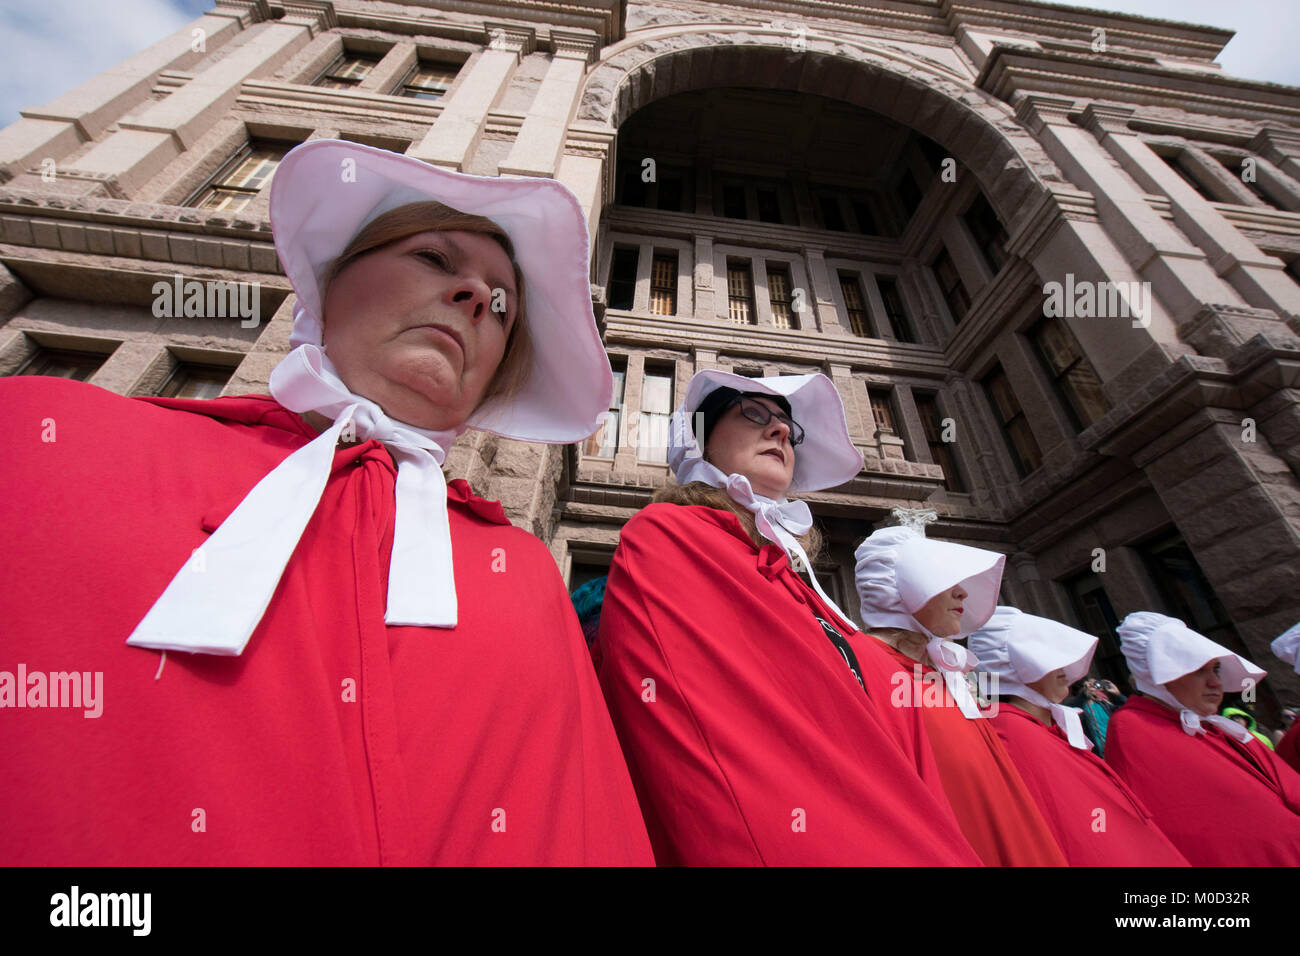 Mujeres vestidas como personajes del libro de Margaret Atwood "Handmaid's Tale' participan en un mitin en el Capitolio de Texas, en Austin para conmemorar el primer aniversario de la marcha de mujeres del Washington y políticas que se oponen a la promulgada durante la Presidencia de Donald Trump en su primer año en el cargo. Foto de stock